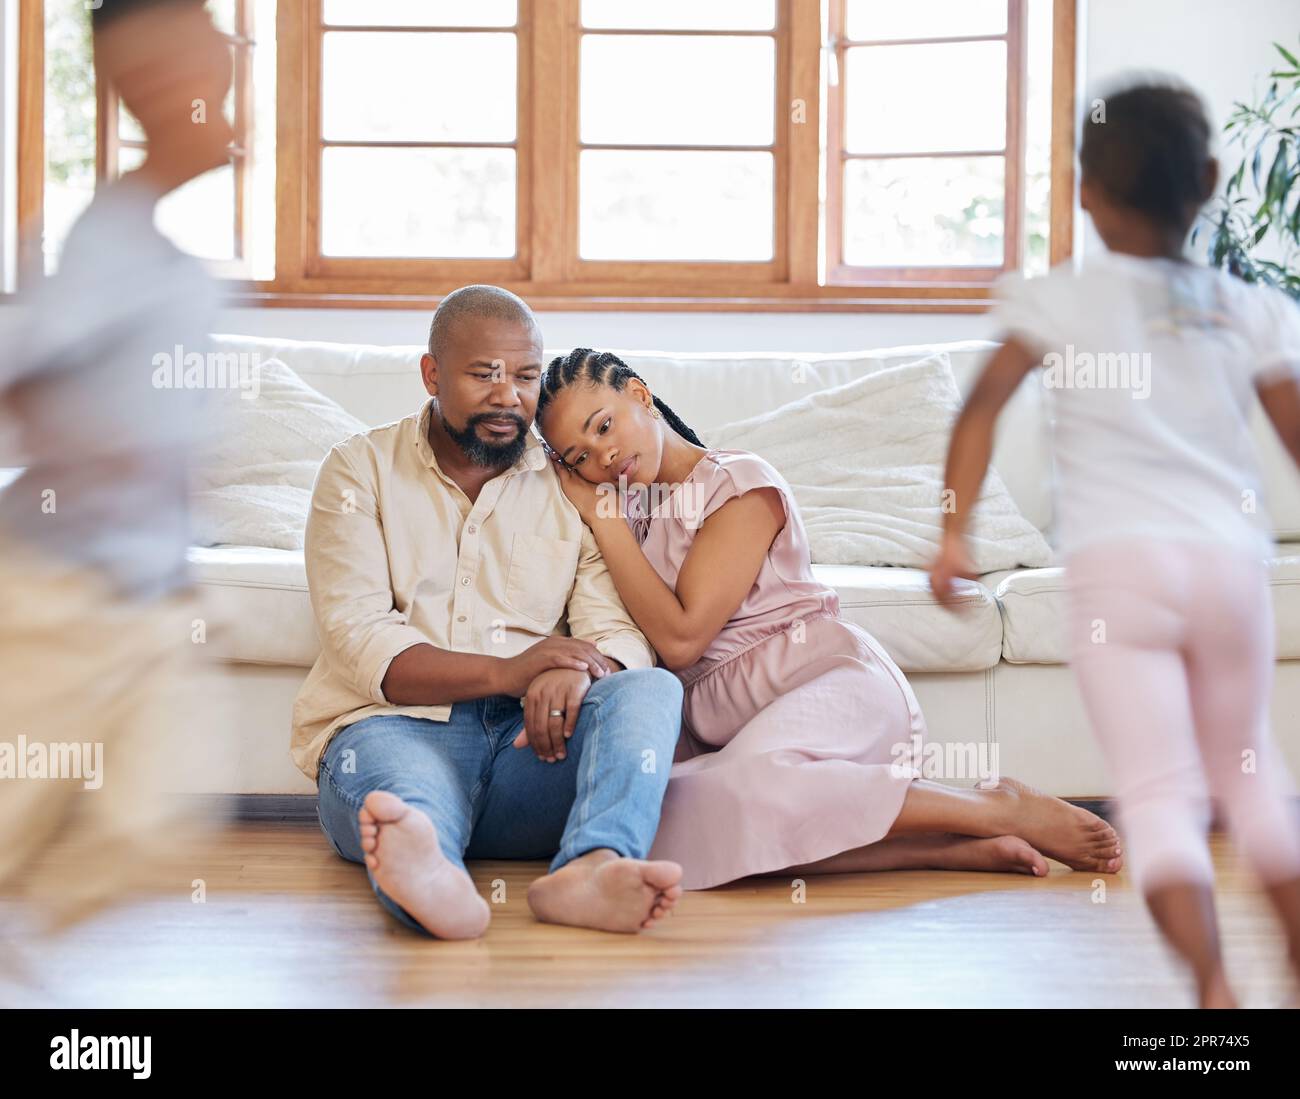 Ein müdes afroamerikanisches Paar, das auf dem Loungeboden saß und müde aussah, während ihre Hyperkinder um sie herum spielten. Zwei schwarze Geschwister, die Spaß haben, während ihre erschöpften Eltern sich entspannen Stockfoto